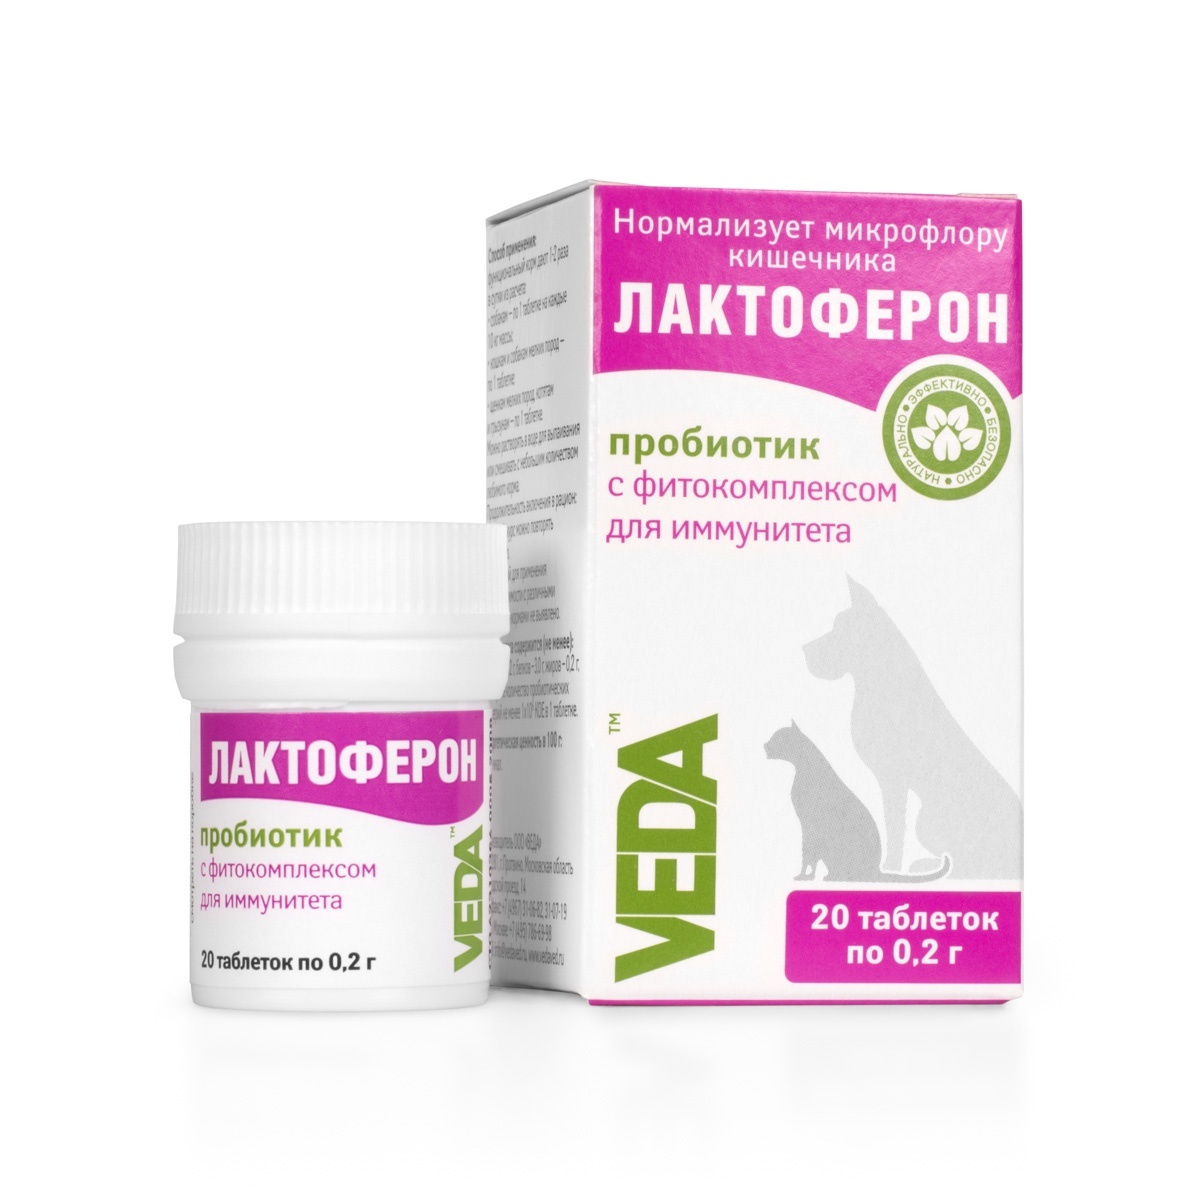 Веда Веда лактоферон-пробиотик для улучшения обмена веществ, 20 таб. (10 г)